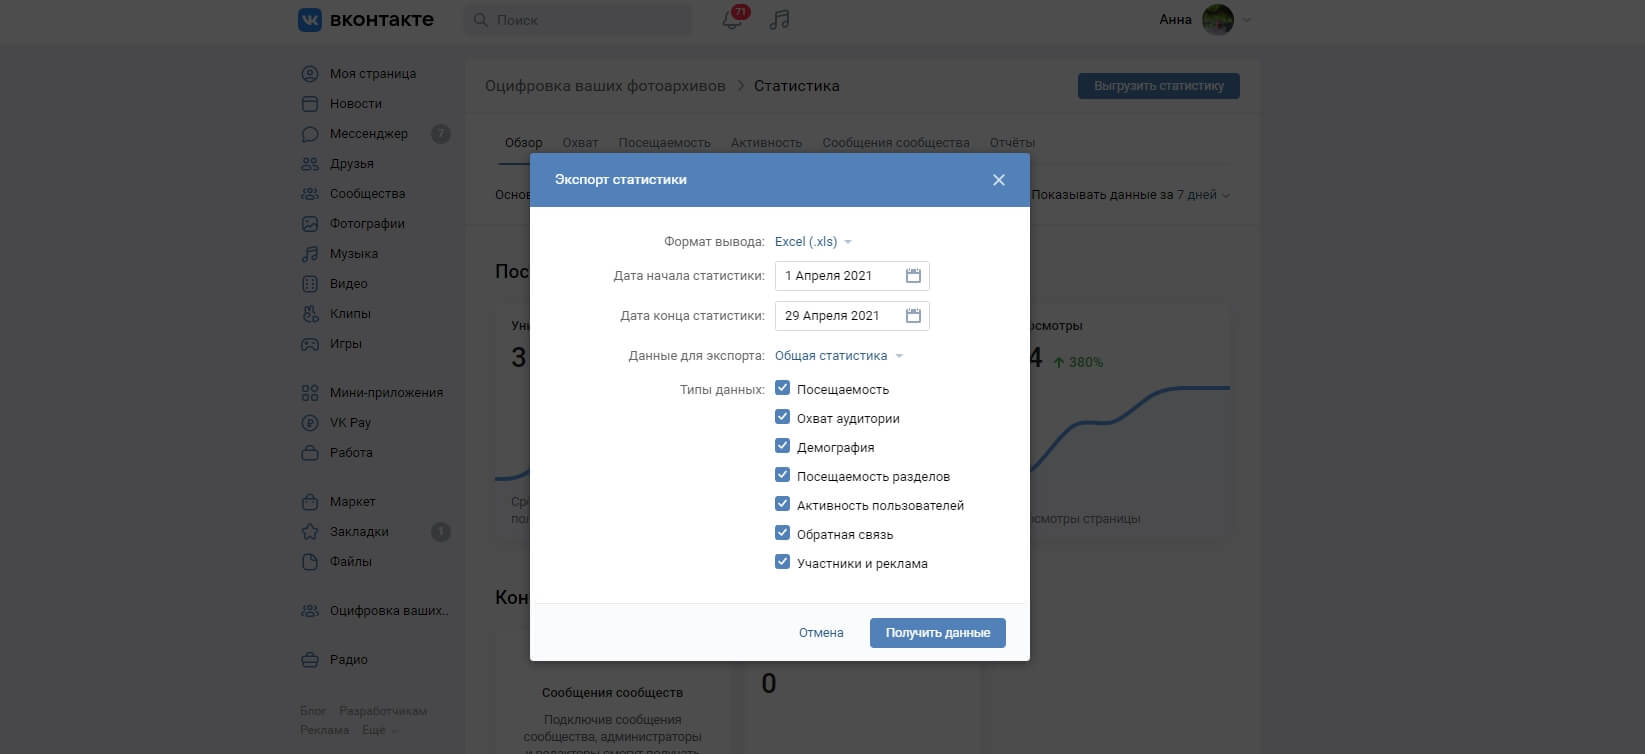 Экспорт статистики в рекламном кабинете ВКонтакте для отчета SMM-специалиста перед заказчиком